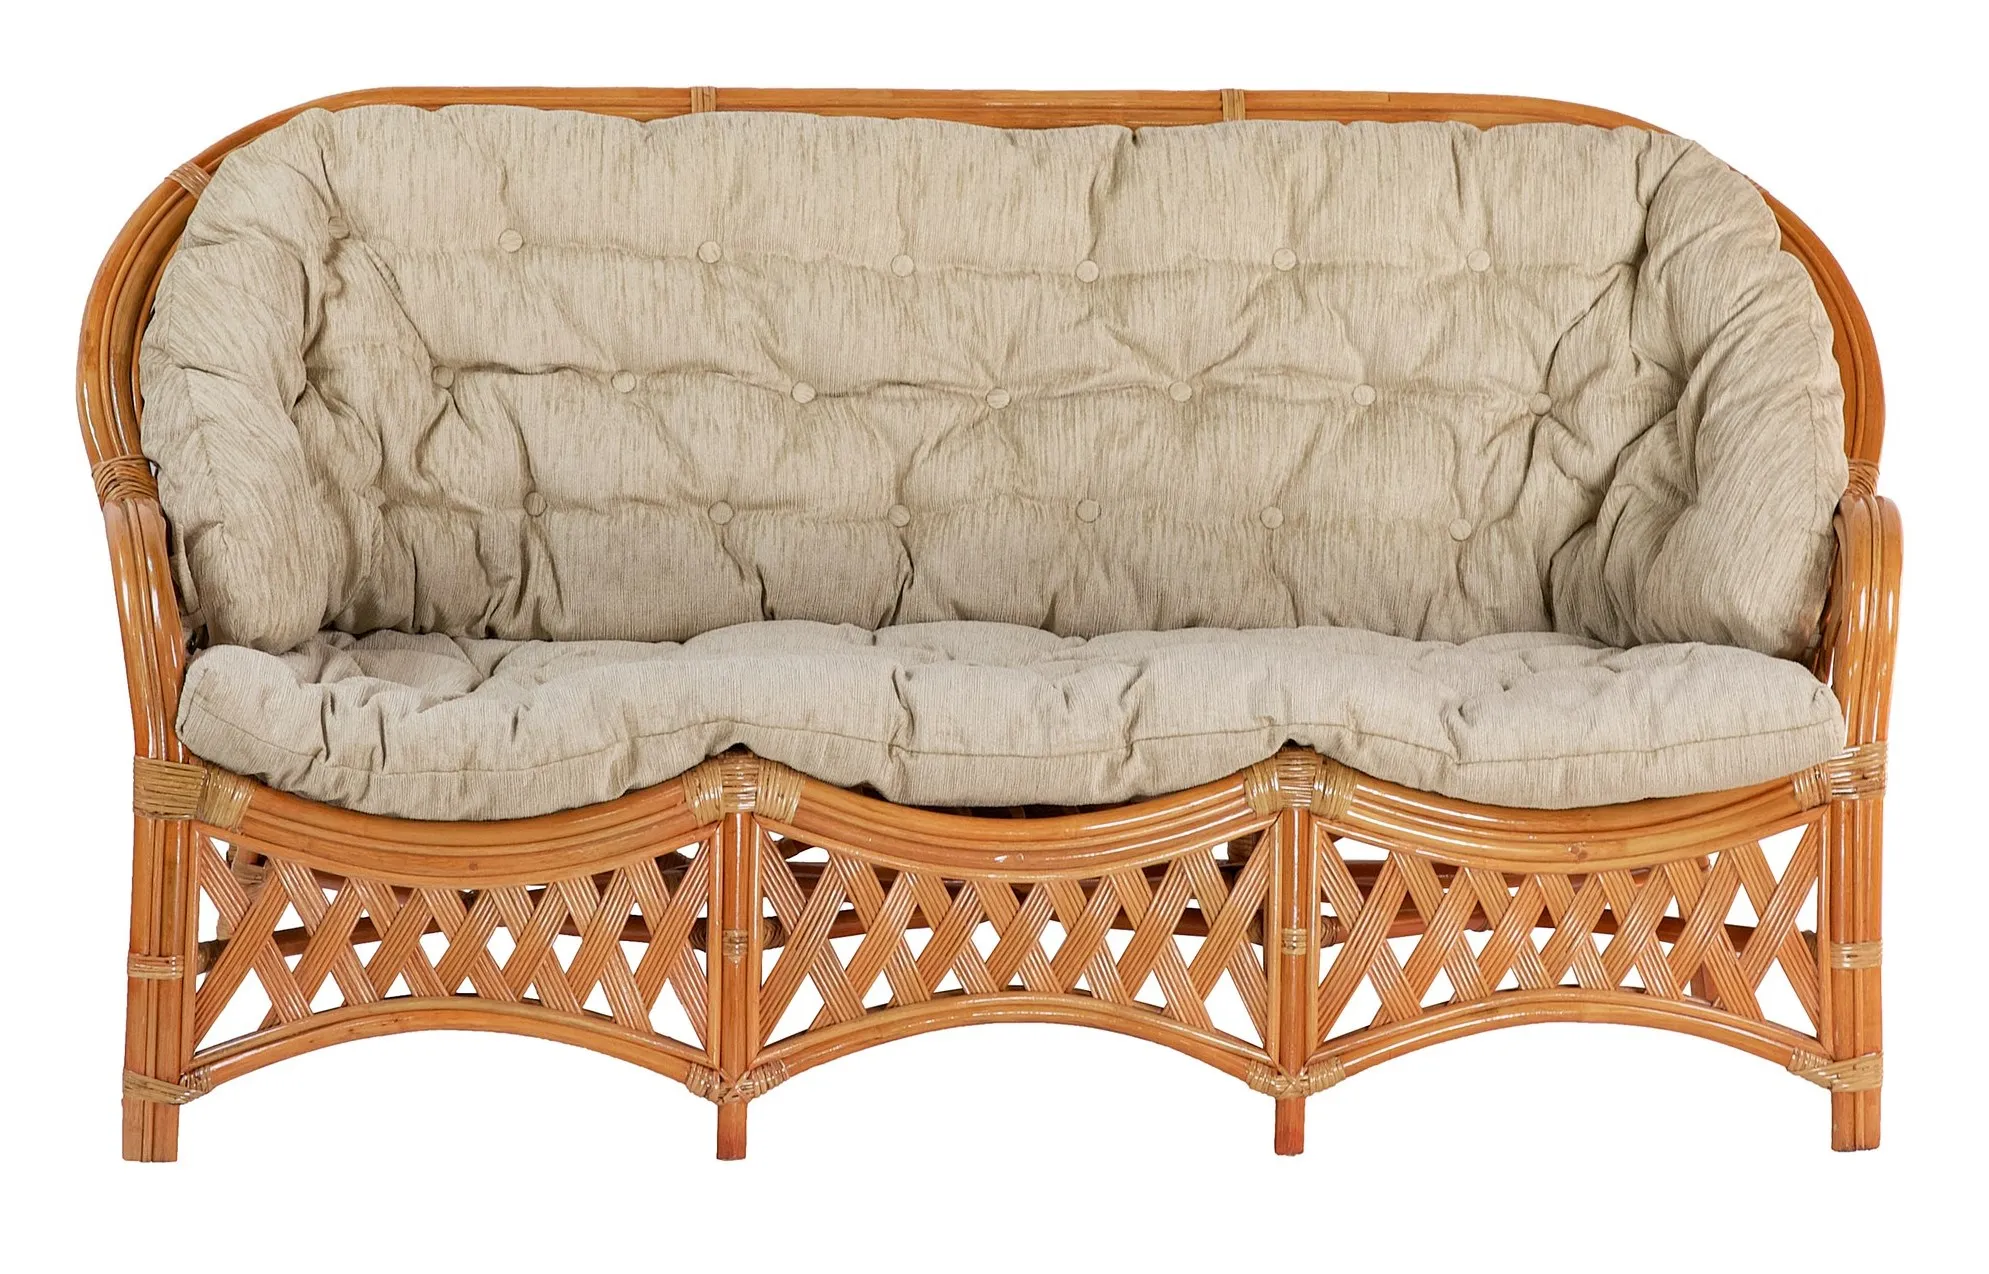 Комплект мебели из ротанга Черчилль (Рузвельт) с 3-х местным диваном и овальным столом коньяк